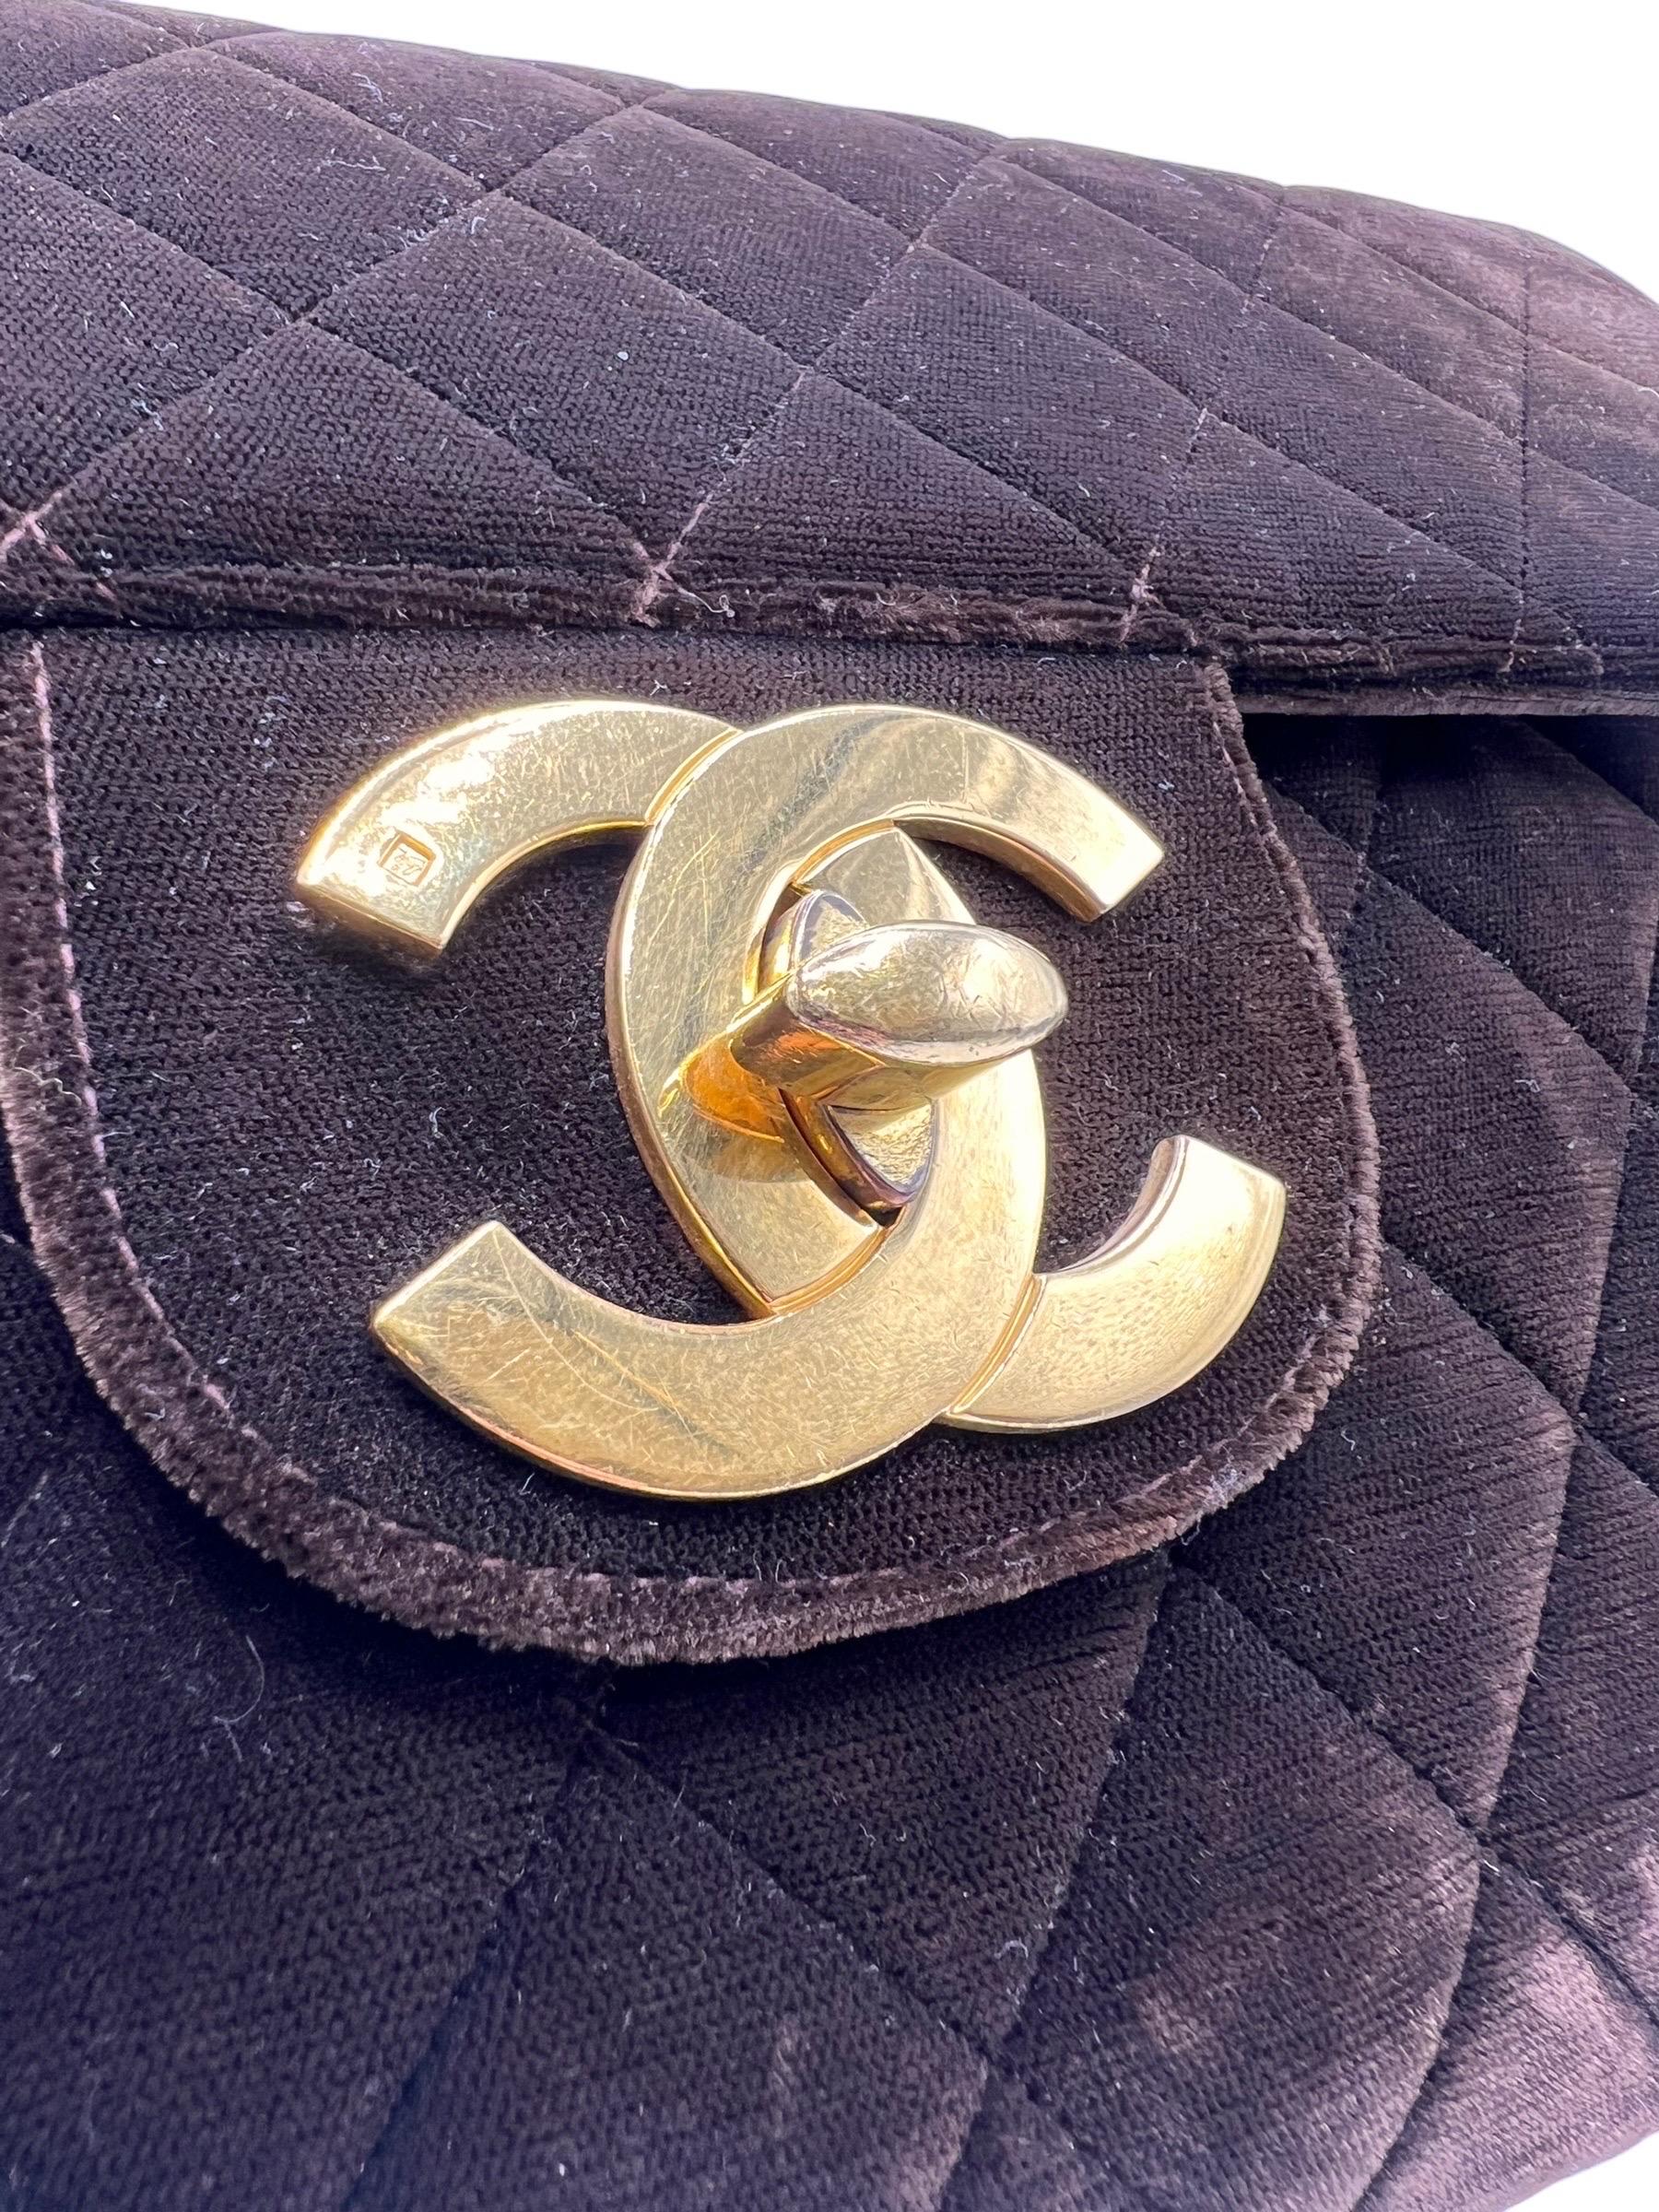 Borsa firmata Chanel, modello Jumbo Big Logo, realizzata in velluto marrone con hardware dorati. Dotata di chiusura a girello e classico logo CC, internamente rivestita in pelle liscia marrone, abbastanza capiente. Munita di una tracolla a